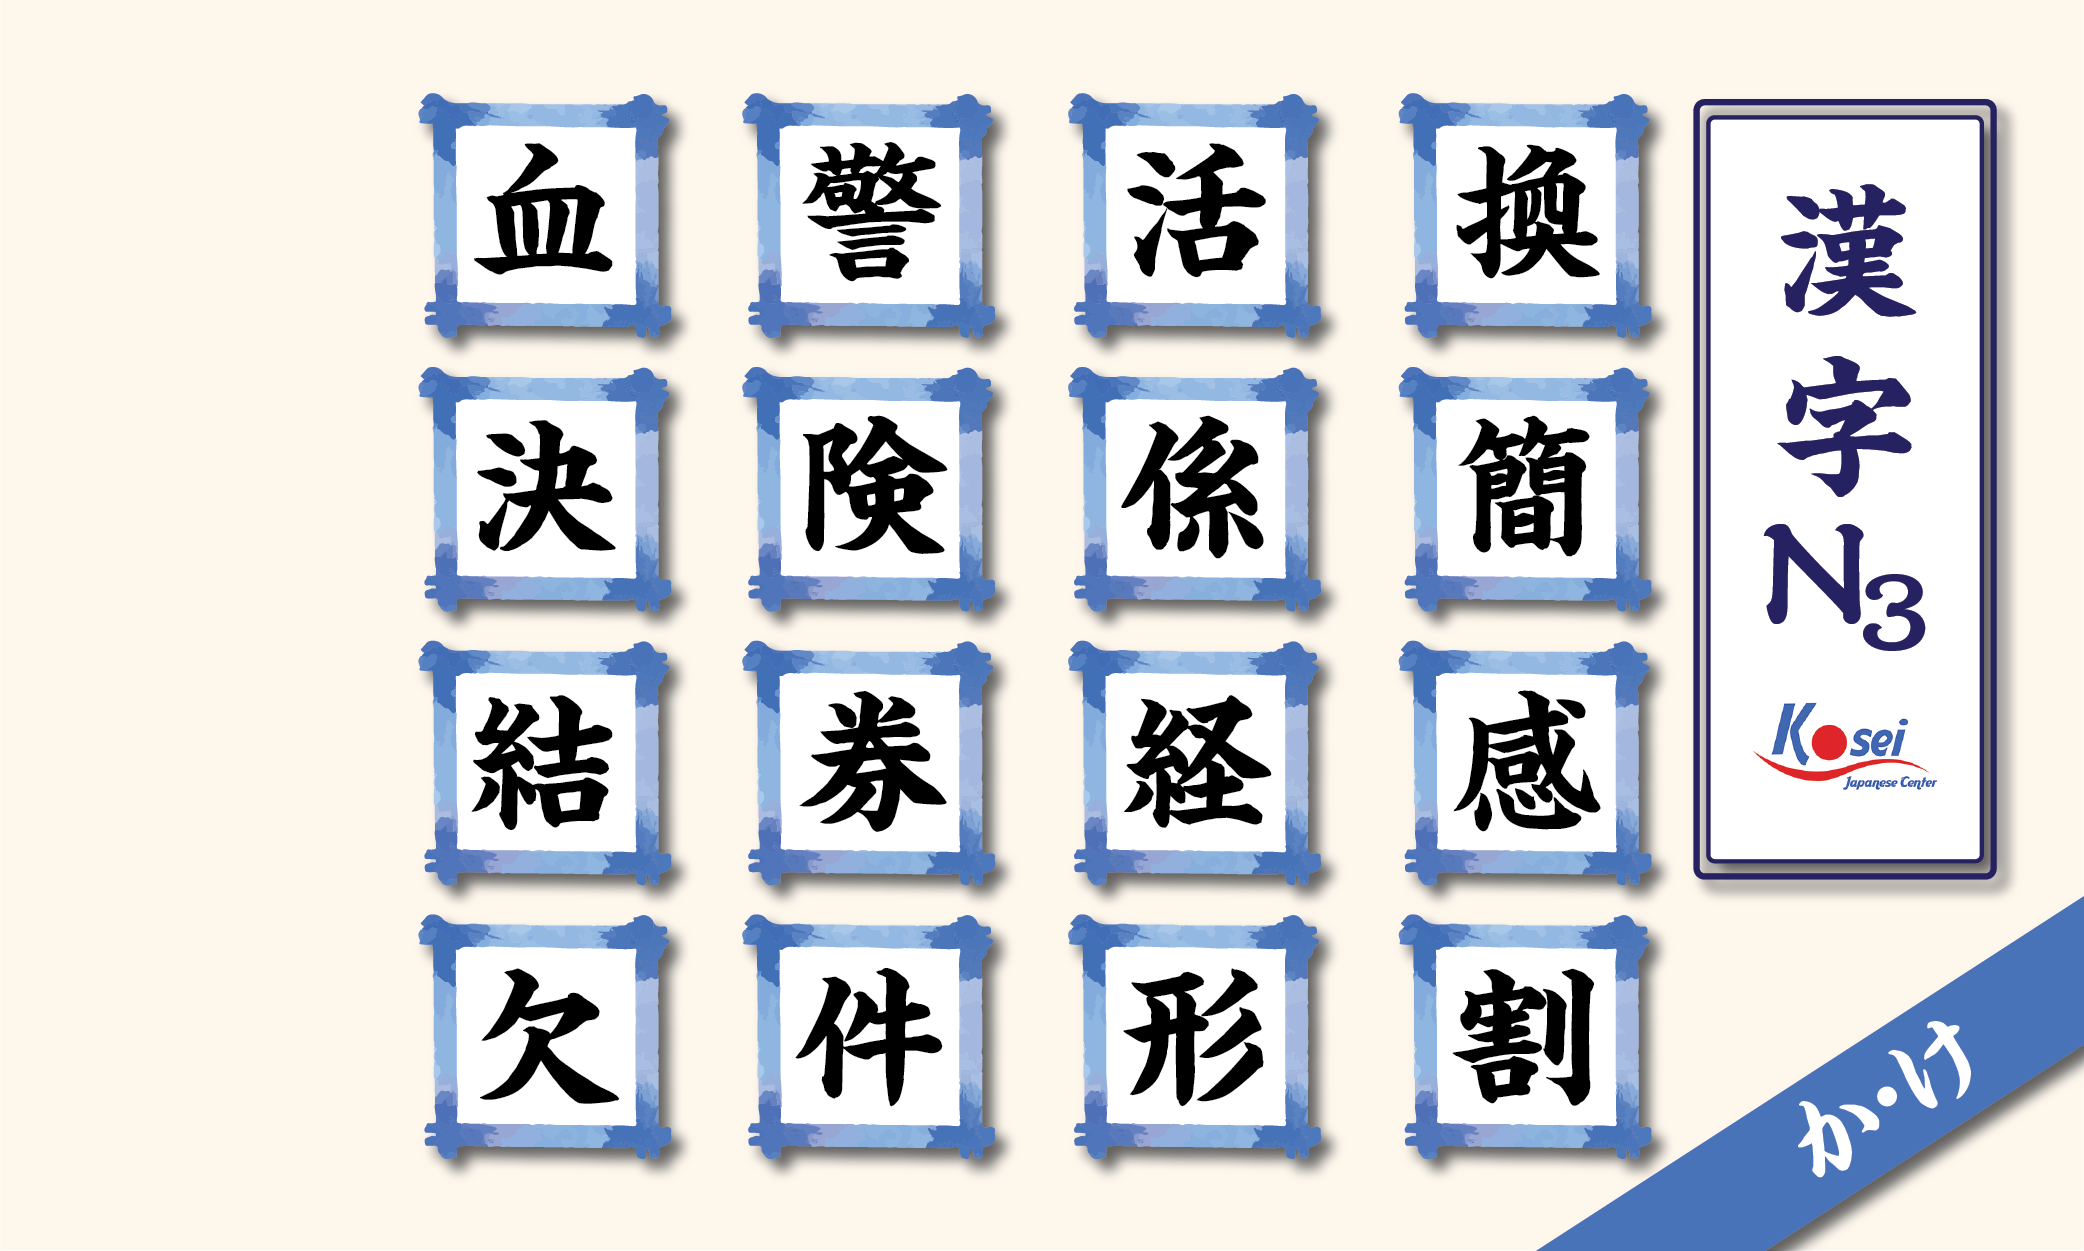 kanji n3 theo âm on hàng k